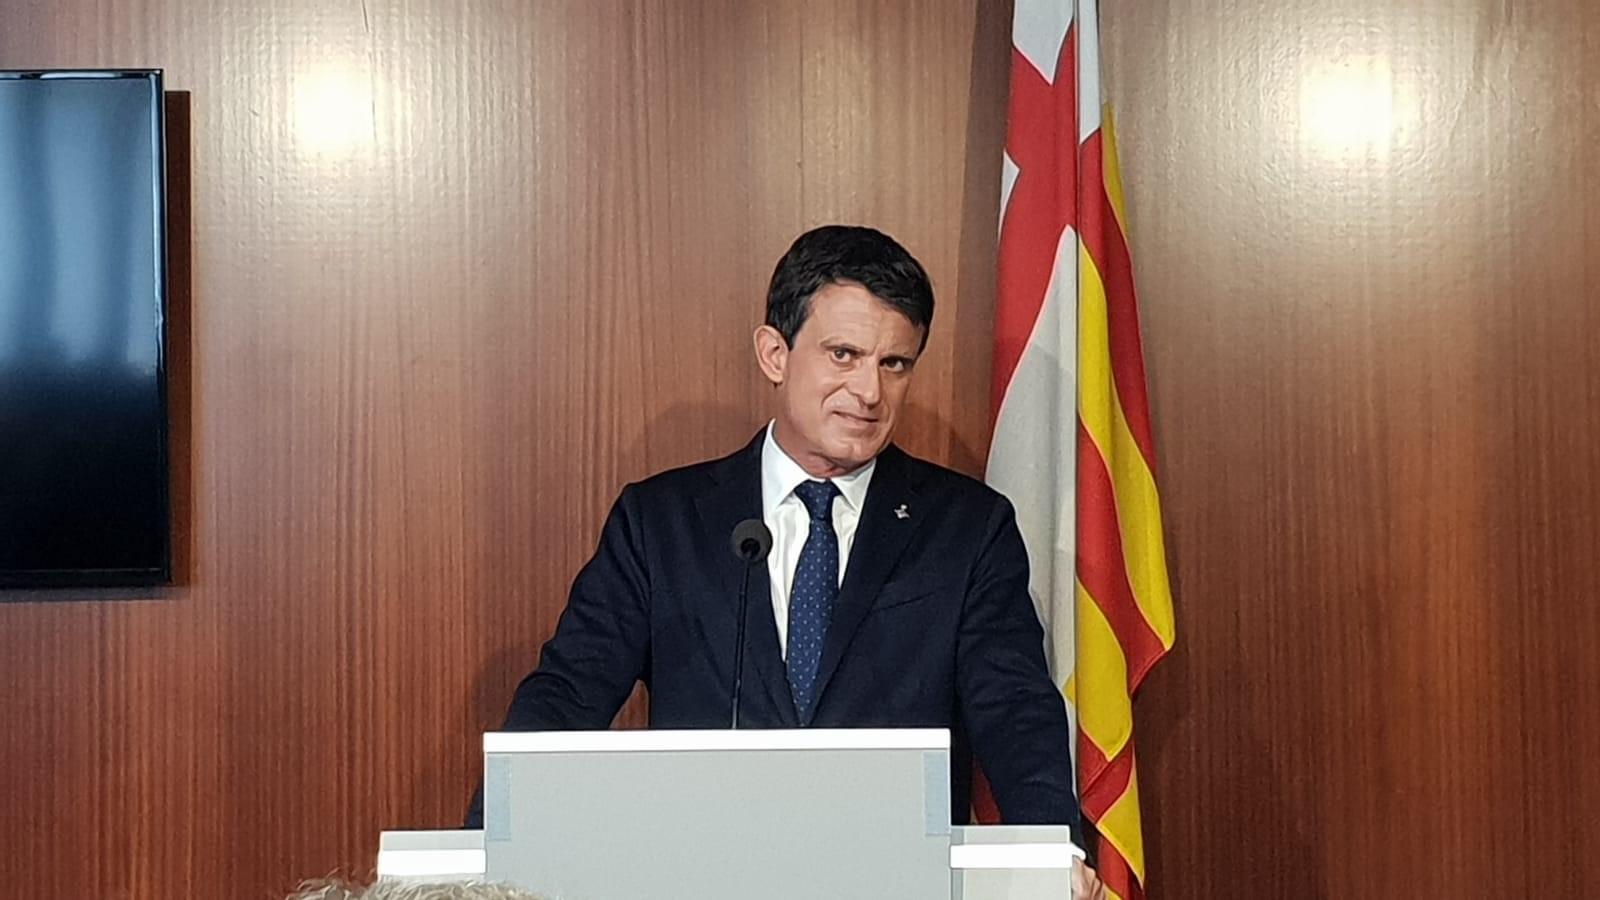 Manuel Valls, hasta ahora líder de BCN Canvi. Fuente: Europa Press.